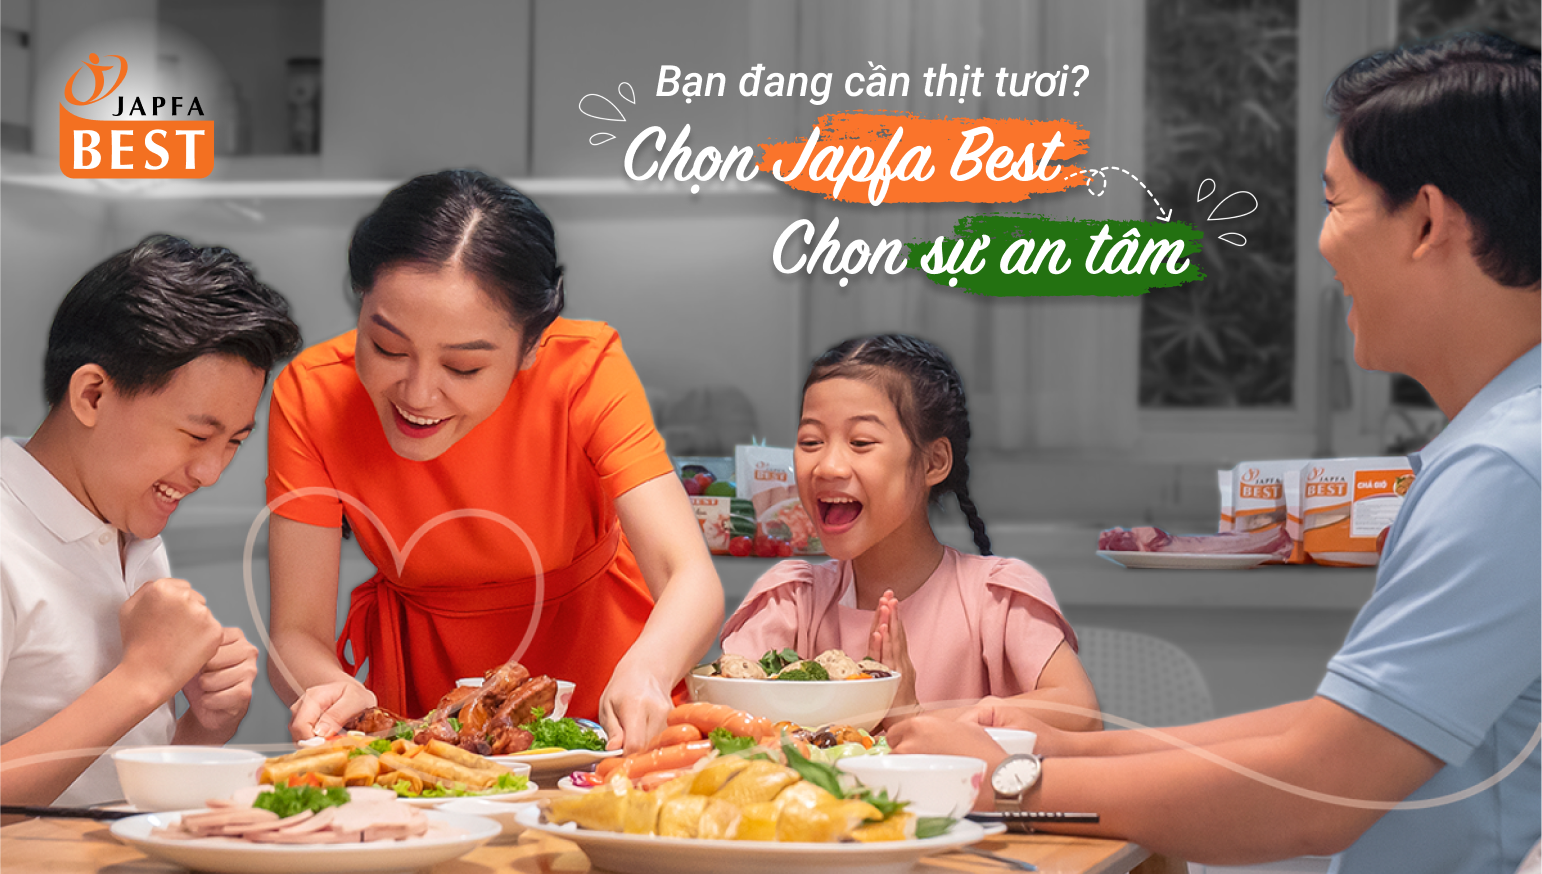 Gia nhập ngành thịt, Japfa Việt Nam thiết lập vị thế với thương hiệu Japfa Best - Ảnh 1.